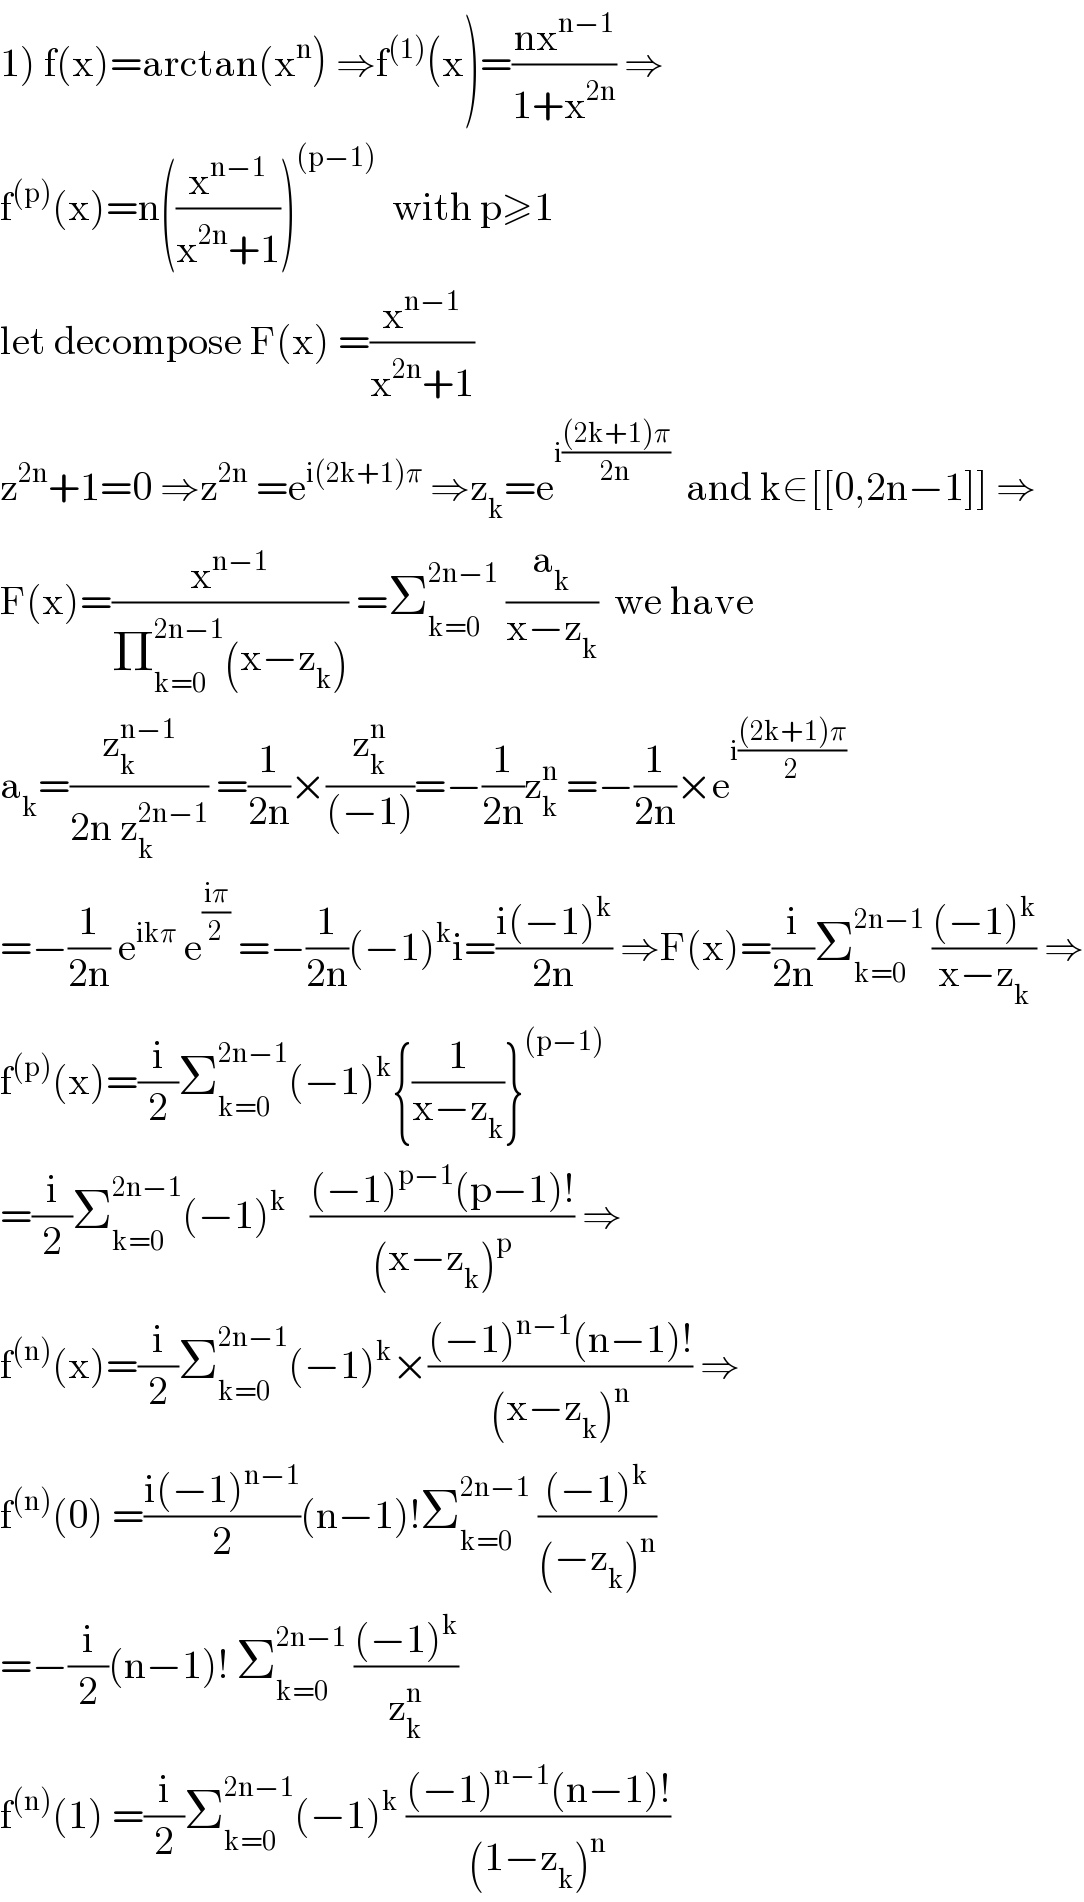 1) f(x)=arctan(x^n ) ⇒f^((1)) (x)=((nx^(n−1) )/(1+x^(2n) )) ⇒  f^((p)) (x)=n((x^(n−1) /(x^(2n) +1)))^((p−1))   with p≥1  let decompose F(x) =(x^(n−1) /(x^(2n) +1))  z^(2n) +1=0 ⇒z^(2n)  =e^(i(2k+1)π)  ⇒z_k =e^(i(((2k+1)π)/(2n)))   and k∈[[0,2n−1]] ⇒  F(x)=(x^(n−1) /(Π_(k=0) ^(2n−1) (x−z_k ))) =Σ_(k=0) ^(2n−1)  (a_k /(x−z_k ))  we have  a_k =(z_k ^(n−1) /(2n z_k ^(2n−1) )) =(1/(2n))×(z_k ^n /((−1)))=−(1/(2n))z_k ^n  =−(1/(2n))×e^(i(((2k+1)π)/2))   =−(1/(2n)) e^(ikπ)  e^((iπ)/2)  =−(1/(2n))(−1)^k i=((i(−1)^k )/(2n)) ⇒F(x)=(i/(2n))Σ_(k=0) ^(2n−1)  (((−1)^k )/(x−z_k )) ⇒  f^((p)) (x)=(i/2)Σ_(k=0) ^(2n−1) (−1)^k {(1/(x−z_k ))}^((p−1))   =(i/2)Σ_(k=0) ^(2n−1) (−1)^(k  )   (((−1)^(p−1) (p−1)!)/((x−z_k )^p )) ⇒  f^((n)) (x)=(i/2)Σ_(k=0) ^(2n−1) (−1)^k ×(((−1)^(n−1) (n−1)!)/((x−z_k )^n )) ⇒  f^((n)) (0) =((i(−1)^(n−1) )/2)(n−1)!Σ_(k=0) ^(2n−1)  (((−1)^k )/((−z_k )^n ))   =−(i/2)(n−1)! Σ_(k=0) ^(2n−1)  (((−1)^k )/z_k ^n )  f^((n)) (1) =(i/2)Σ_(k=0) ^(2n−1) (−1)^k  (((−1)^(n−1) (n−1)!)/((1−z_k )^n ))  